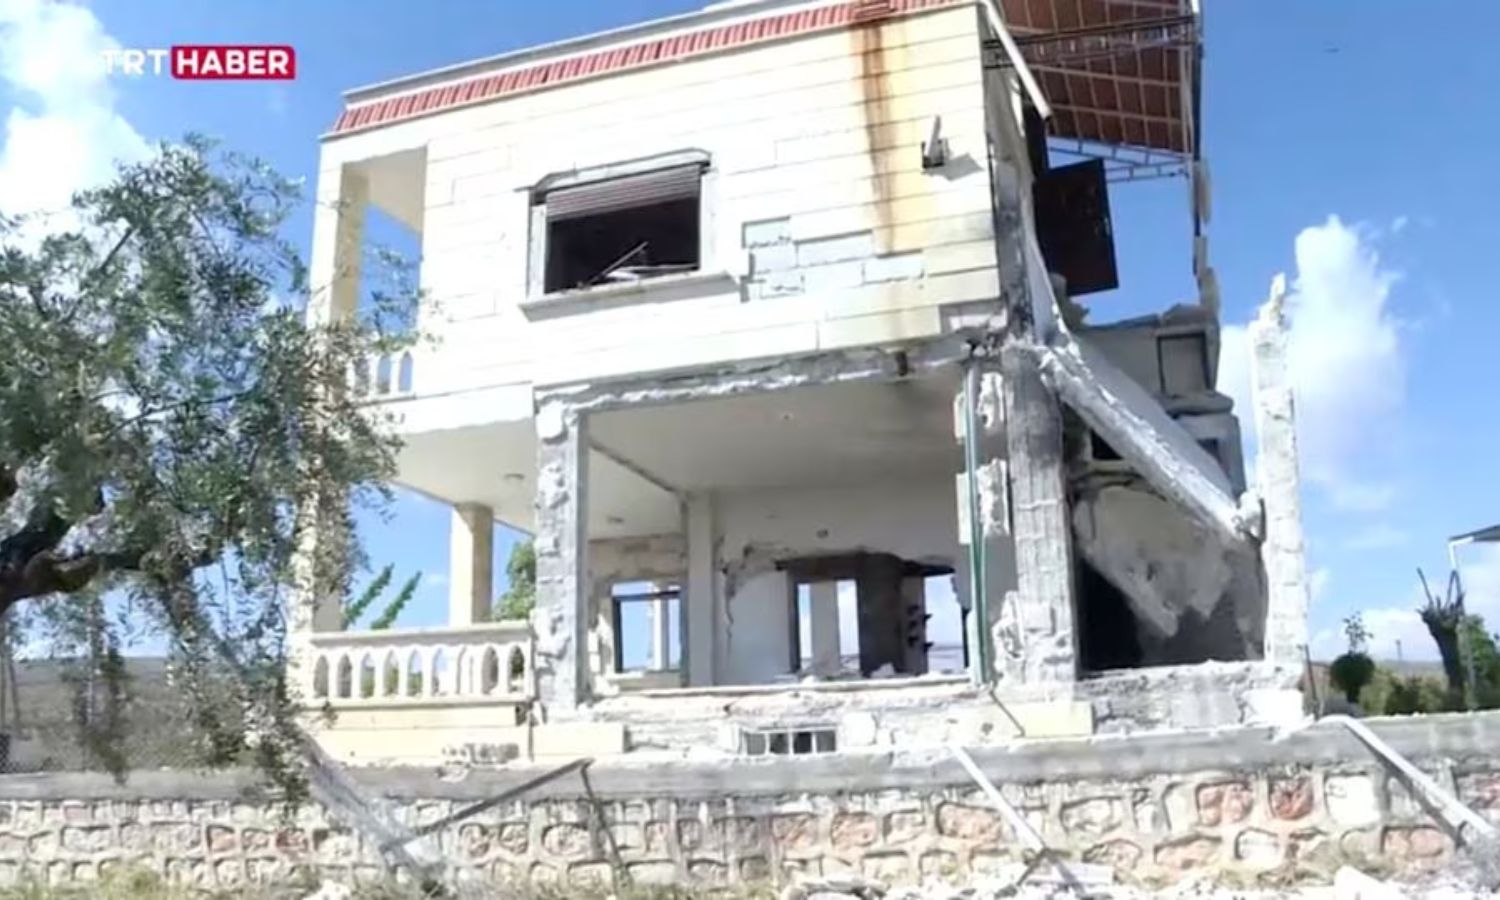 آثار الدمار في المنزل الذي قالت المخابرات التركية إنها قتلت فيه زعيم تنظيم "الدولة الإسلامية، "أبو حسين القرشي" في جنديرس_ 1 من أيار 2023 (TRT Haber)